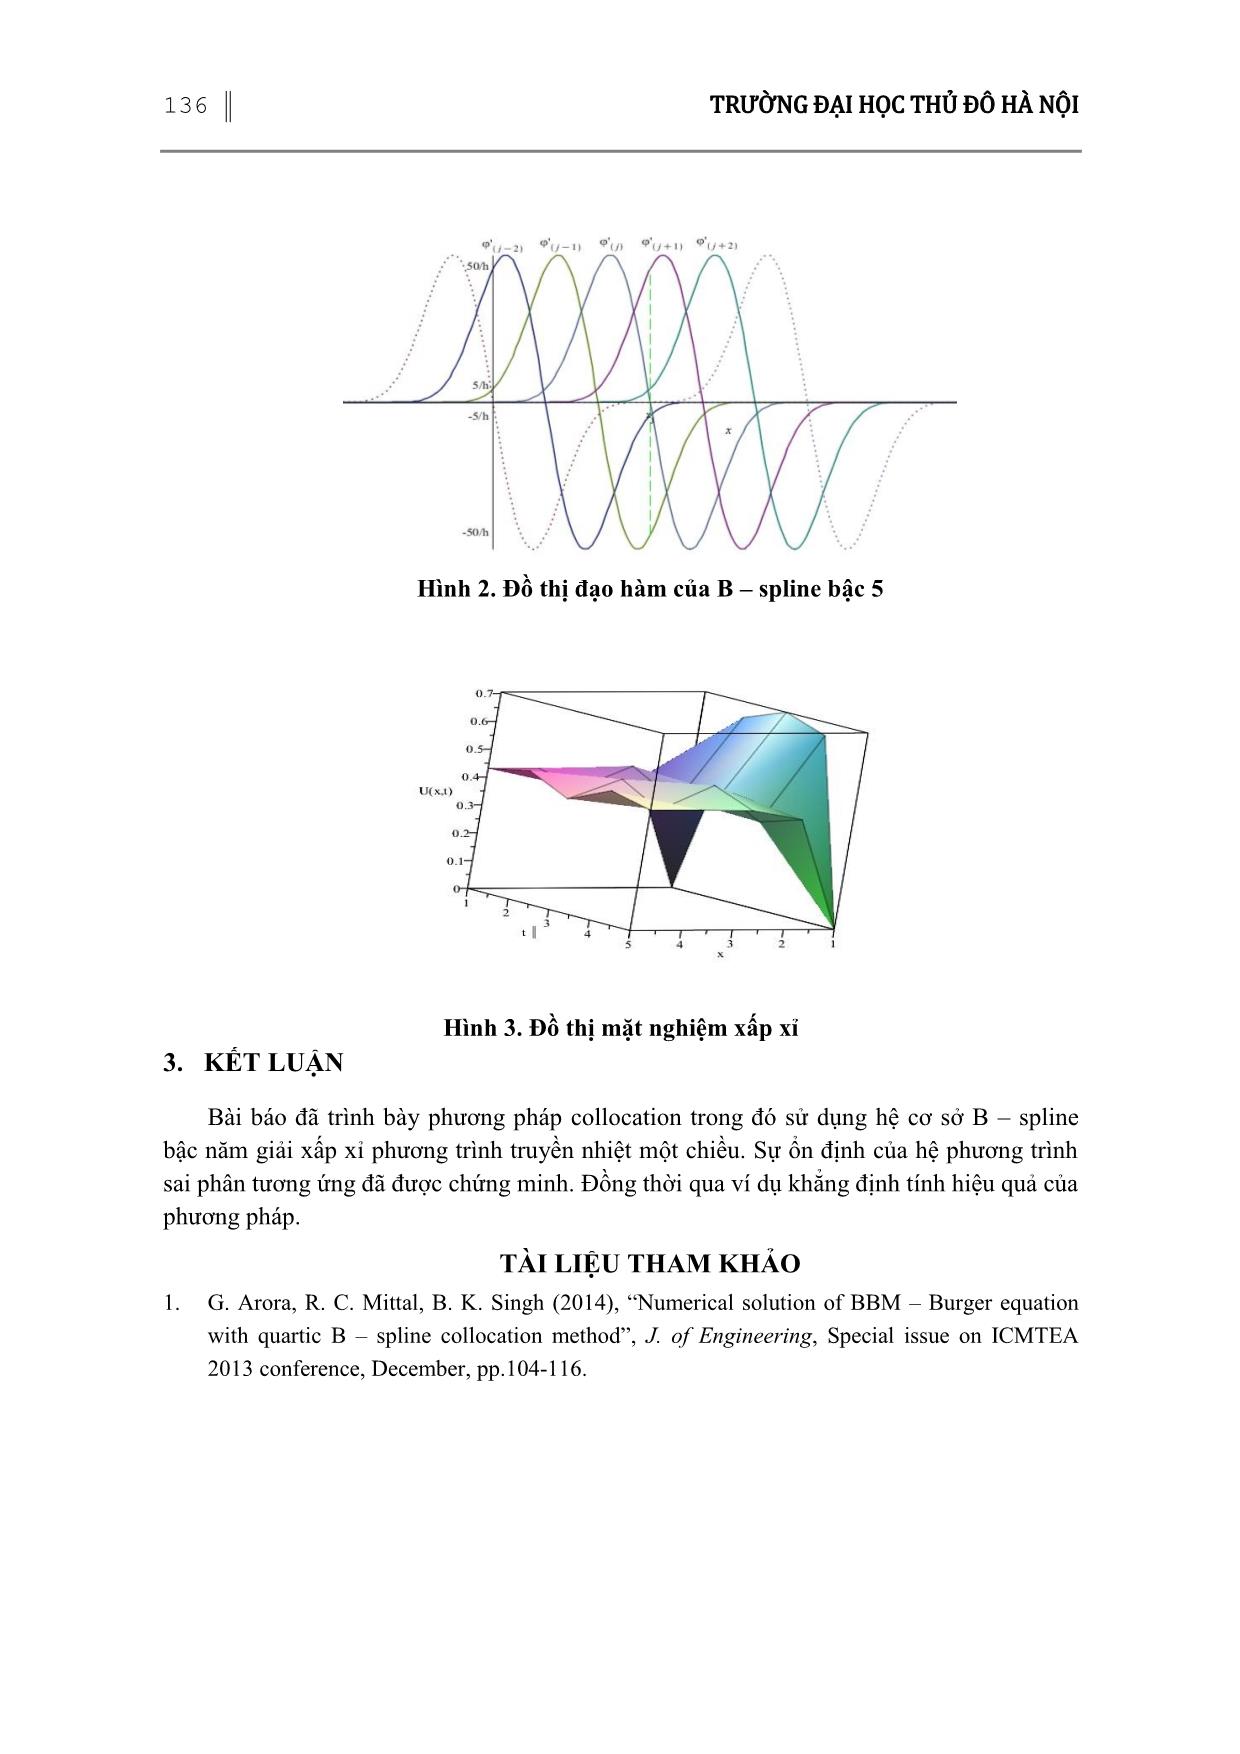 Phương pháp Collocation với cơ sở B-Spline bậc năm giải phương trình truyền nhiệt một chiều trang 9